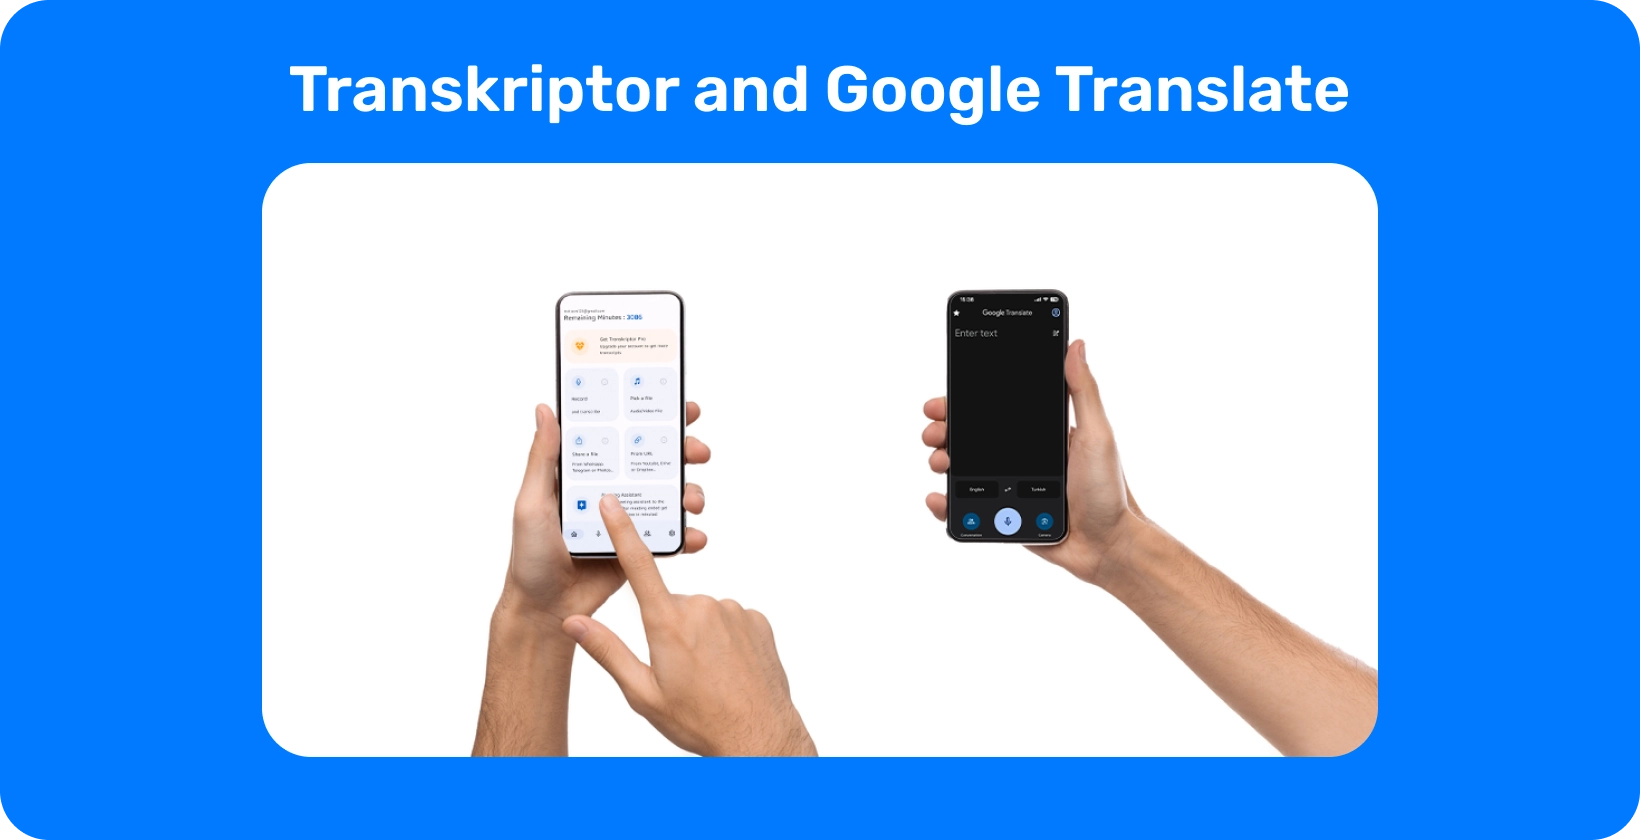 Две руки, держащие смартфоны с Transkriptor и Google Translate, демонстрируют транскрипцию и перевод аудио.